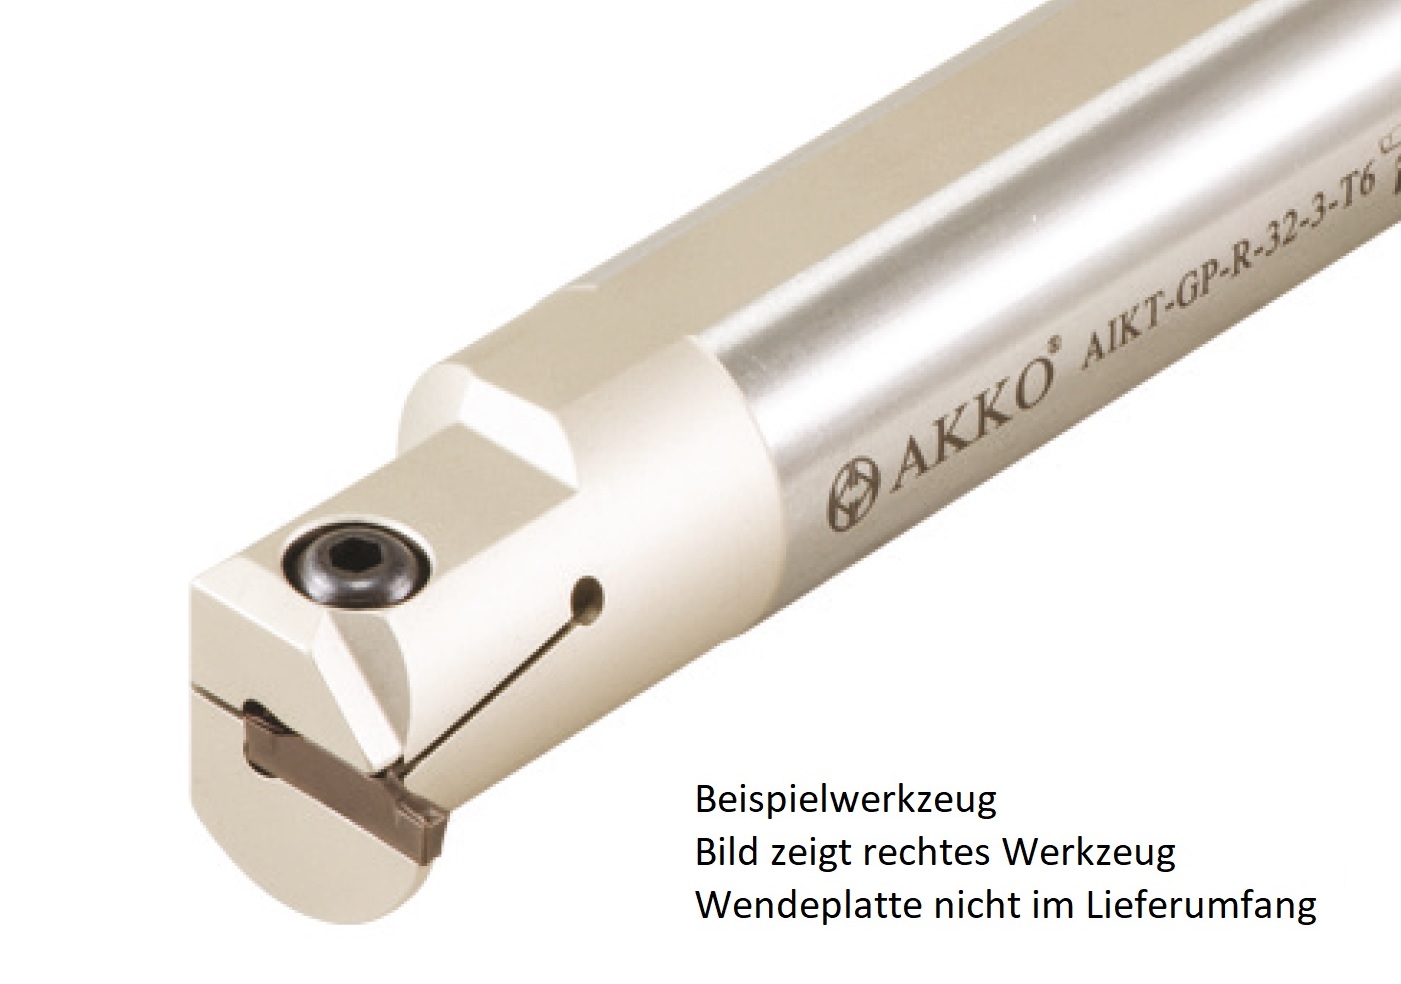 AKKO-Innen-Stechhalter, kompatibel mit Palbit-Stechplatte GP-4
Schaft-ø 25, ohne Innenkühlung, rechts